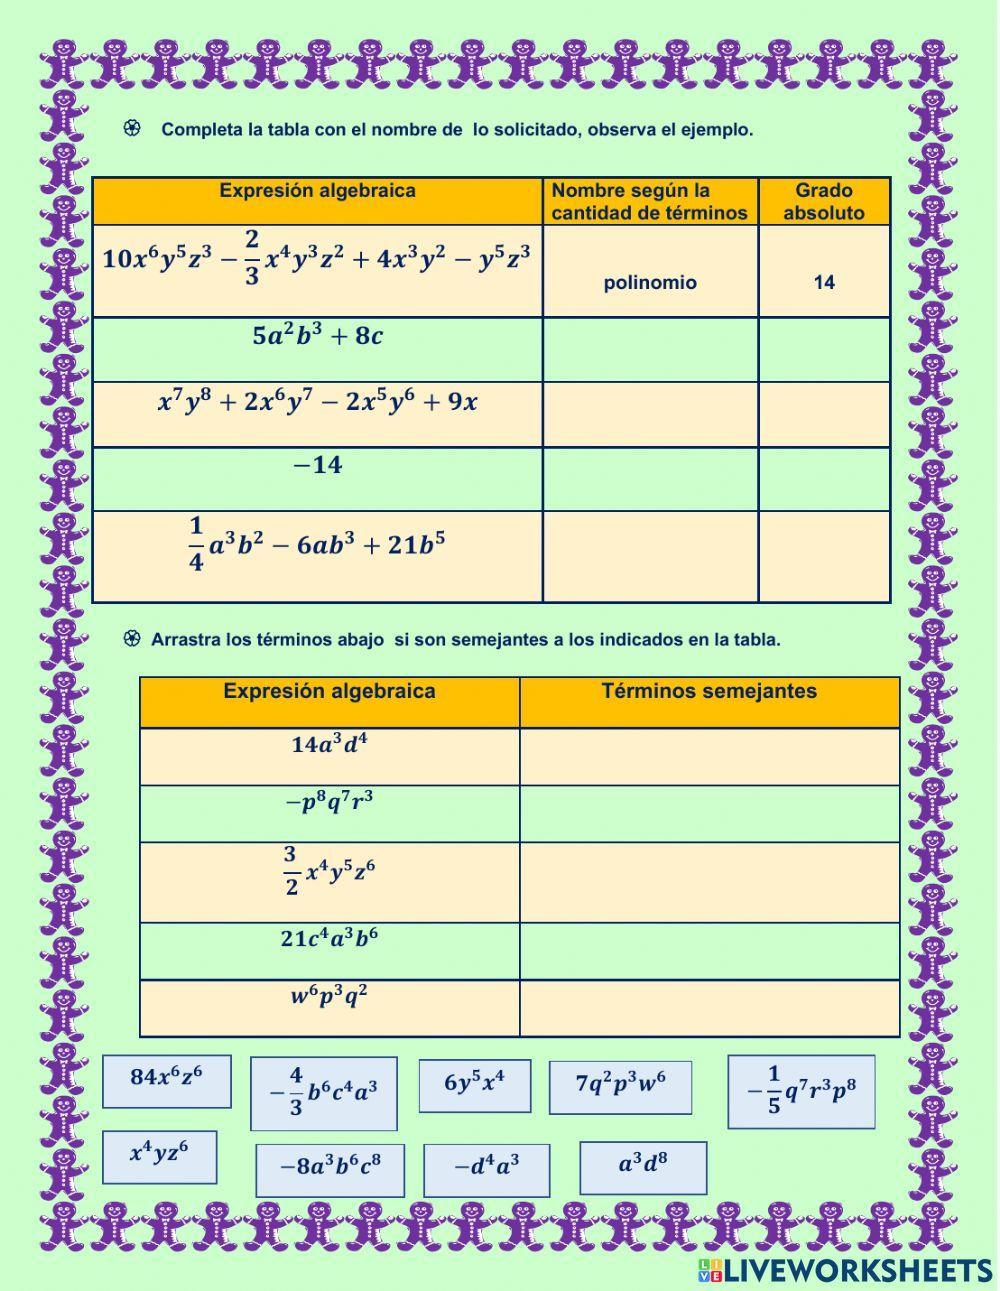 Traducción de lenguaje verbal a lenguaje algebraico, clasificación de las expresiones algebraicas según la cantidad de términos